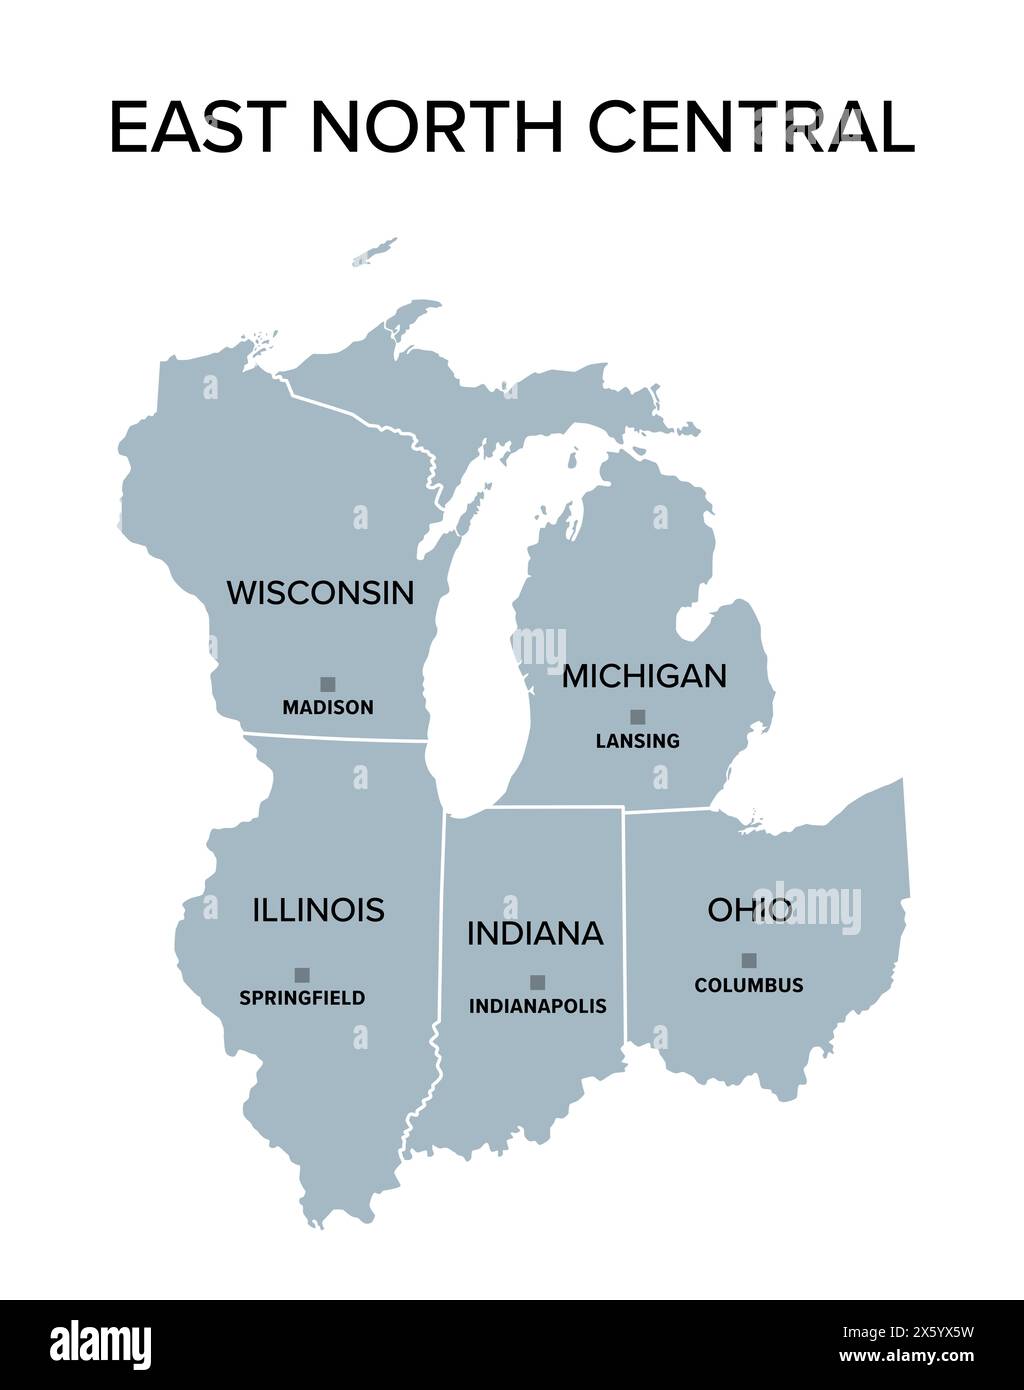 Ost-Nord-zentralstaaten, graue politische Karte mit Grenzen und Hauptstädten. United States Census Division der Region Mittlerer Westen. Stockfoto